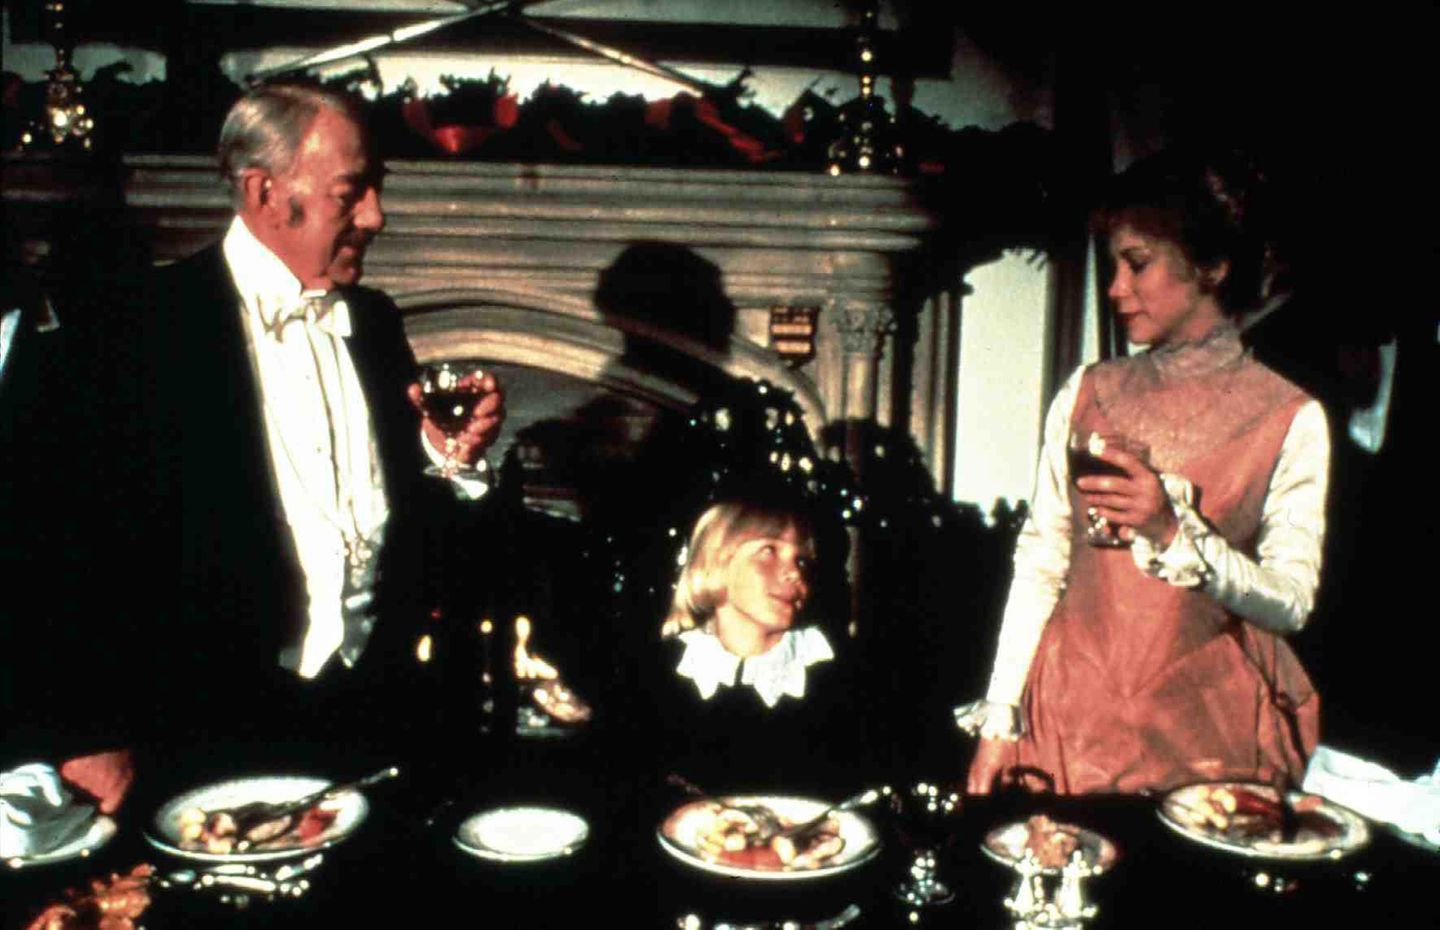 "Der kleine Lord"  Der britische Fernsehfilm "Little Lord Fauntleroy" von 1980 basiert auf dem gleichnamigen Roman von Frances Hodgson Burnett. In den Hauptrollen spielen Alec Guinness und Ricky Schroder. In Deutschland wird der Film bereits seit 1982 in der Weihnachtszeit ausgestrahlt und besitzt inzwischen Kultstatus.